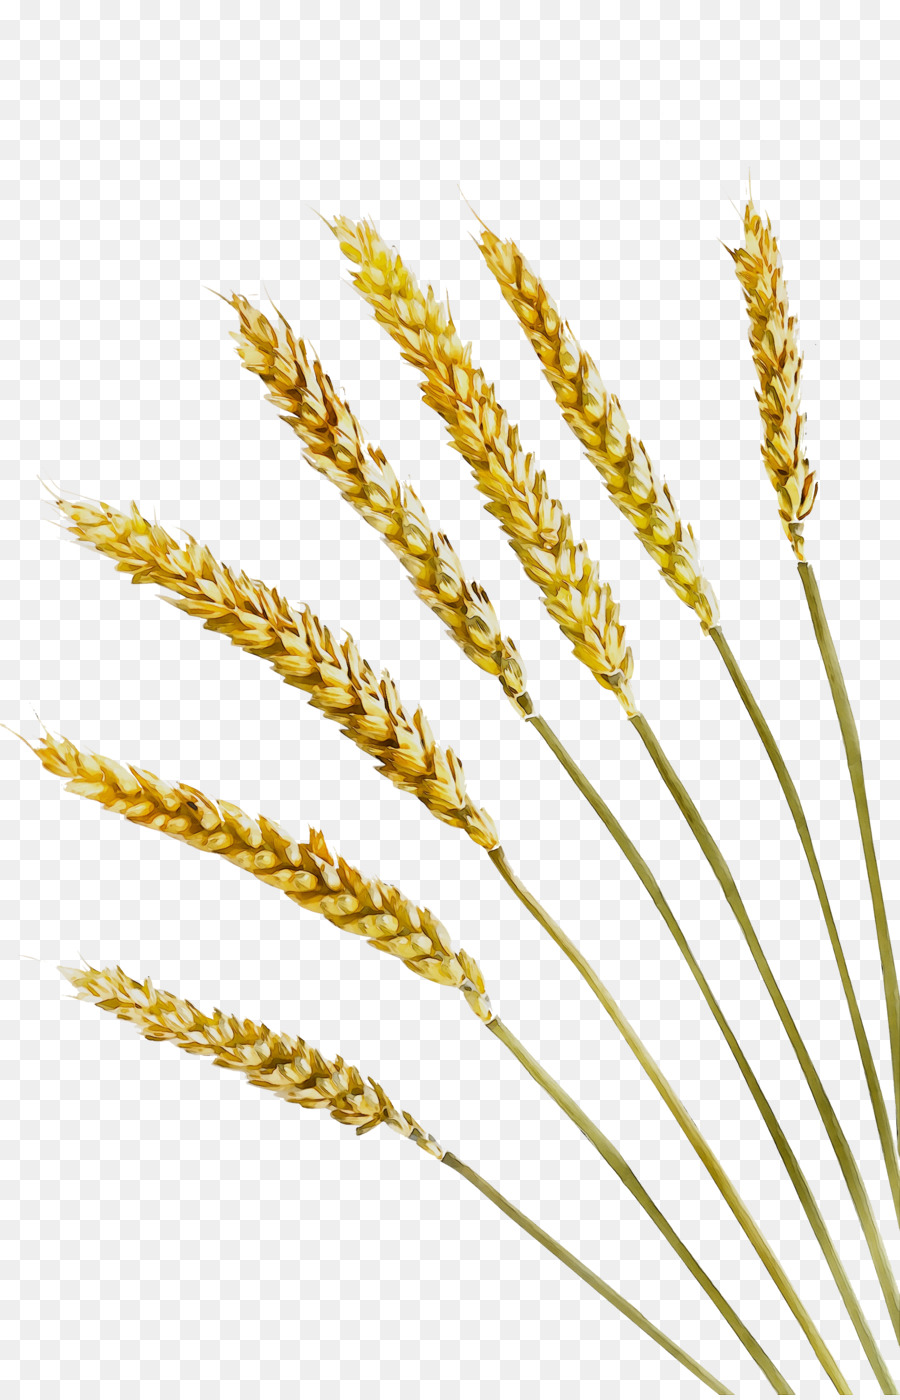 Emmer Video Grano di grano di frumento Einkorn - 